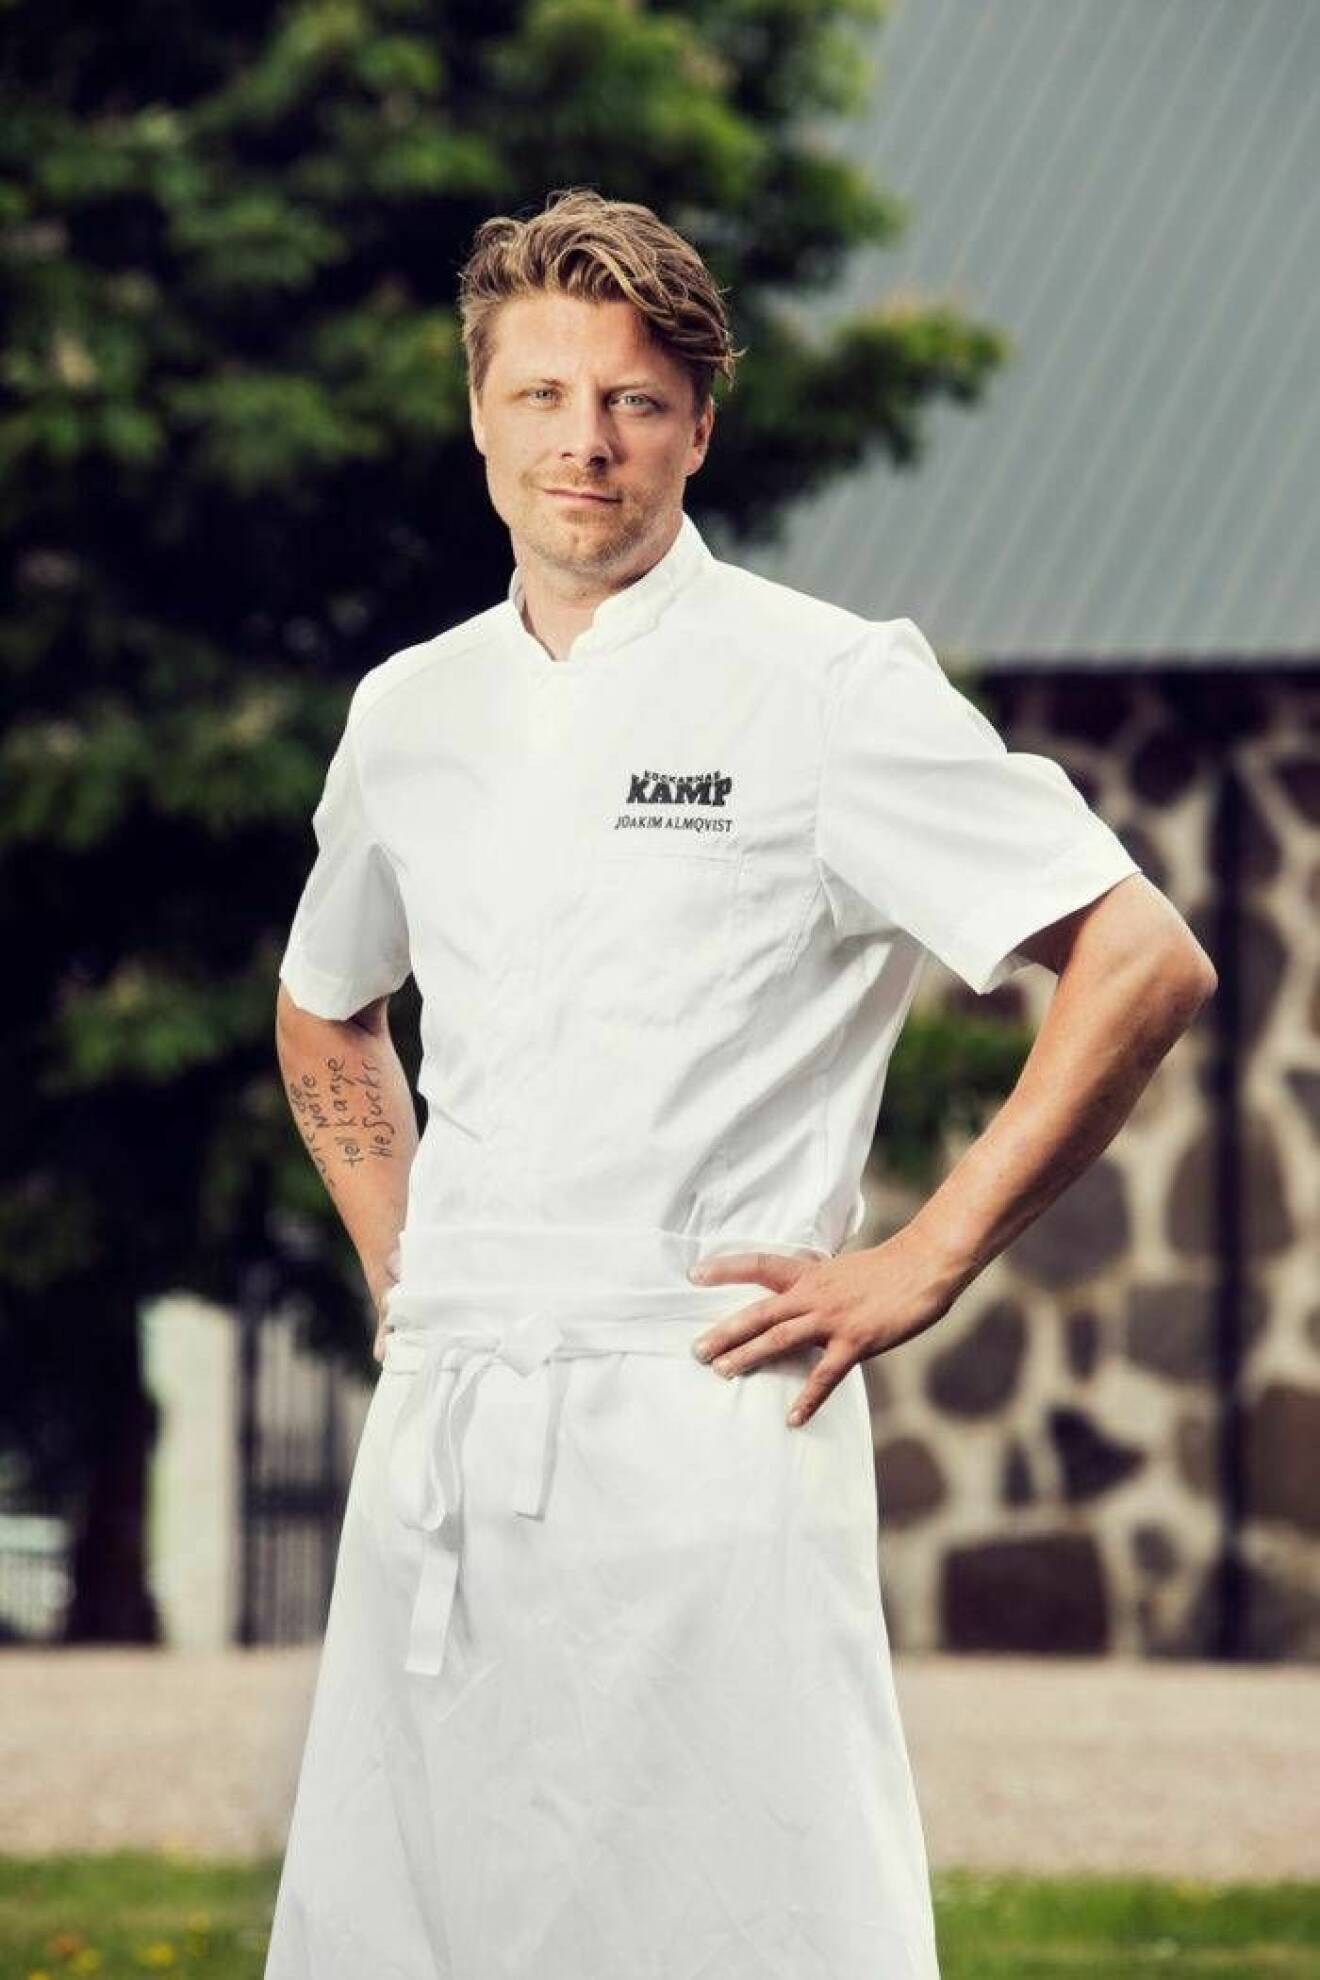 Jocke Almqvist Kockarnas kamp 2018, Rebellen i startfältet. En av grundarna till Punk Royale. En restaurang som beskrivits som ”uppkäftig liten kvarterskrog” i DN.